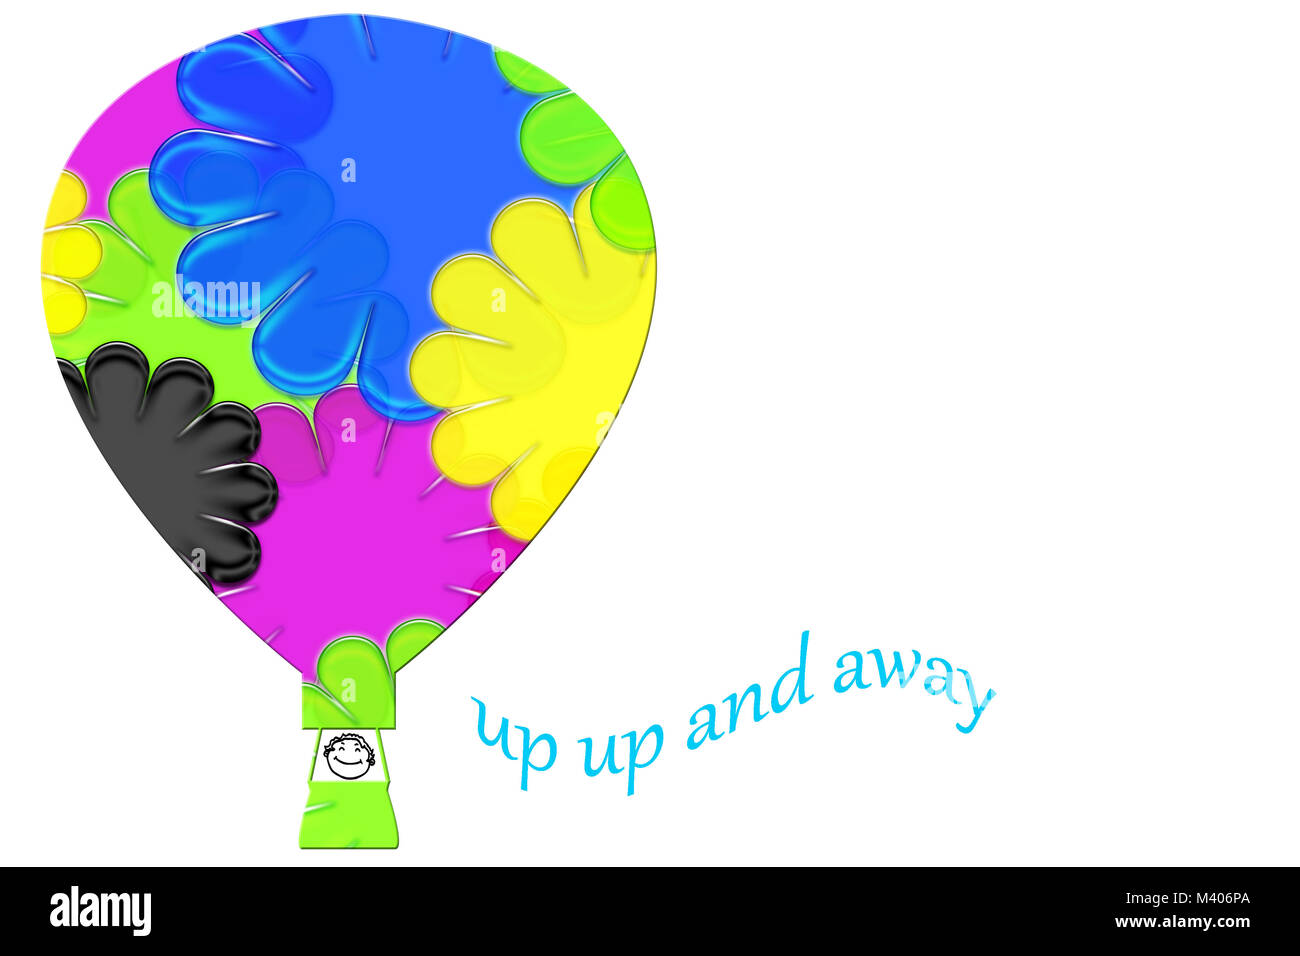 En montgolfière résumé isolé sur un fond blanc. Cartoon Happy face childs en ballon panier. Motif de fleurs colorées et fantaisistes sur les ballons Banque D'Images